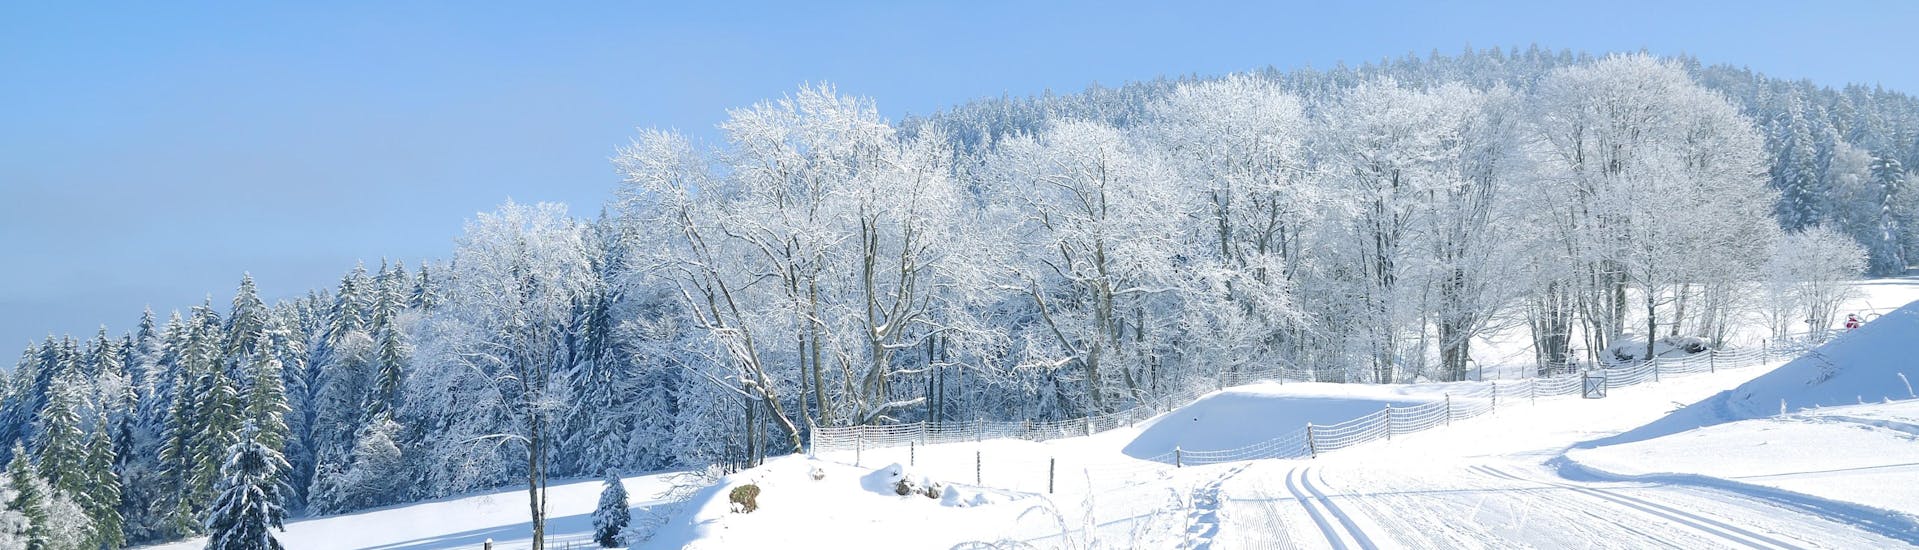 Immagine delle piste della Foresta Bavarese, vicino a Sankt Englmar, dove è possibile prenotare lezioni di sci.